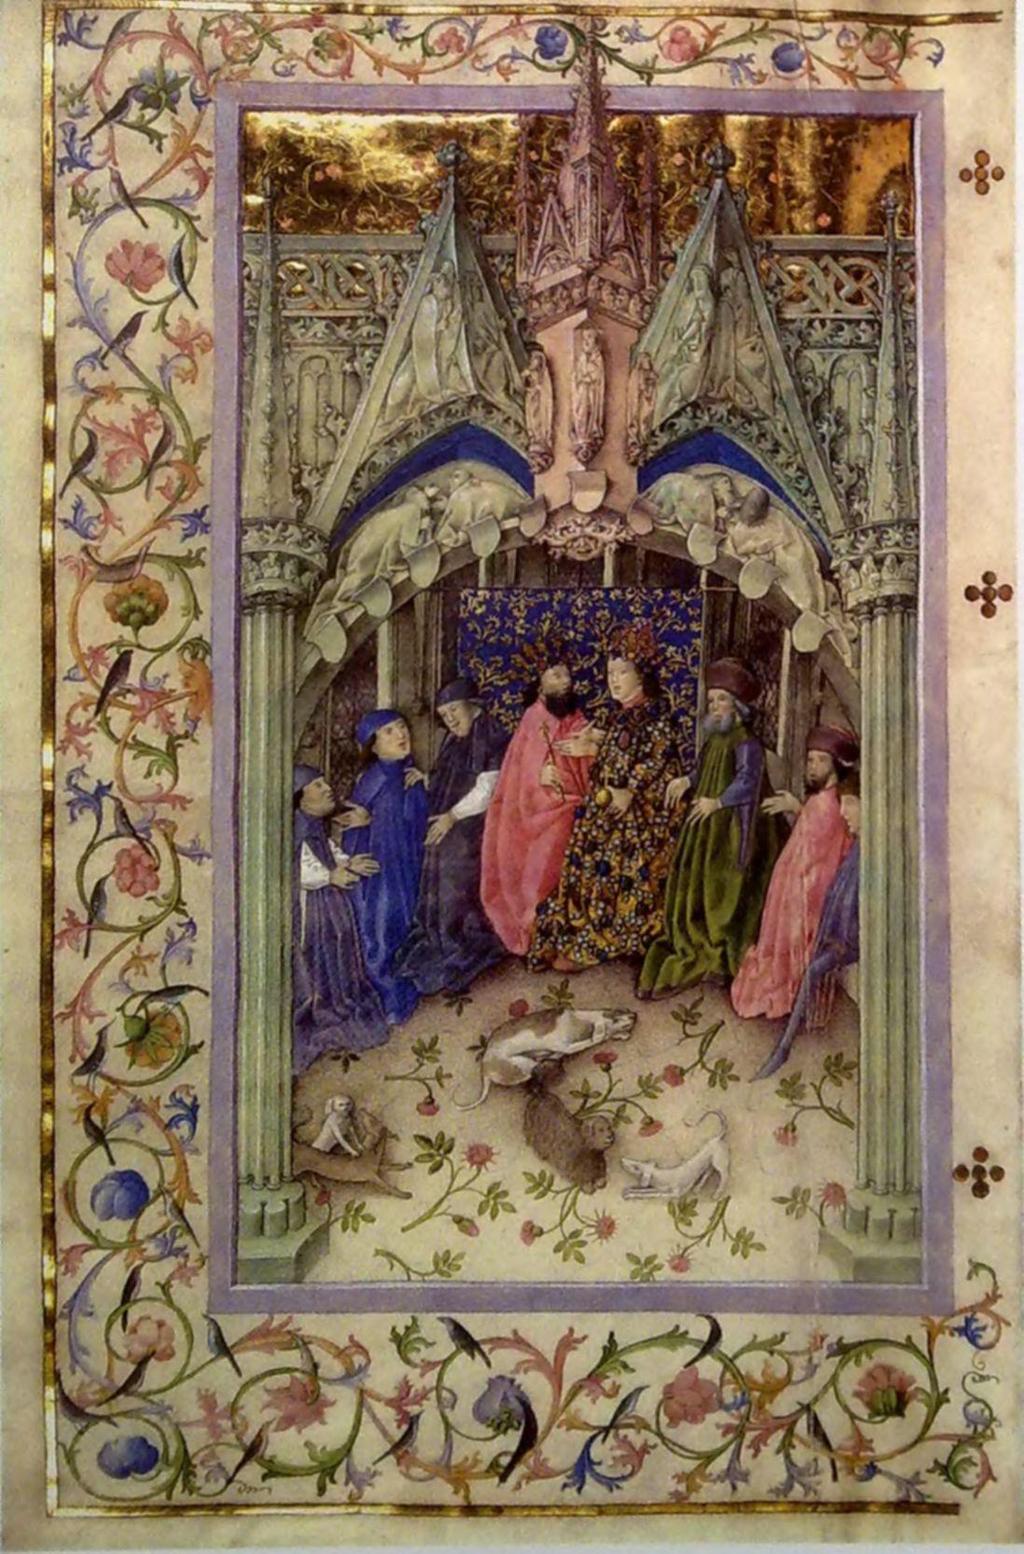 EURÓPA VEZETŐ FEJEDELME Zsigmond magyar király a német király (1411-1431) A császár és a világi választófejedelmek. Breviárium címlapképe, 15.